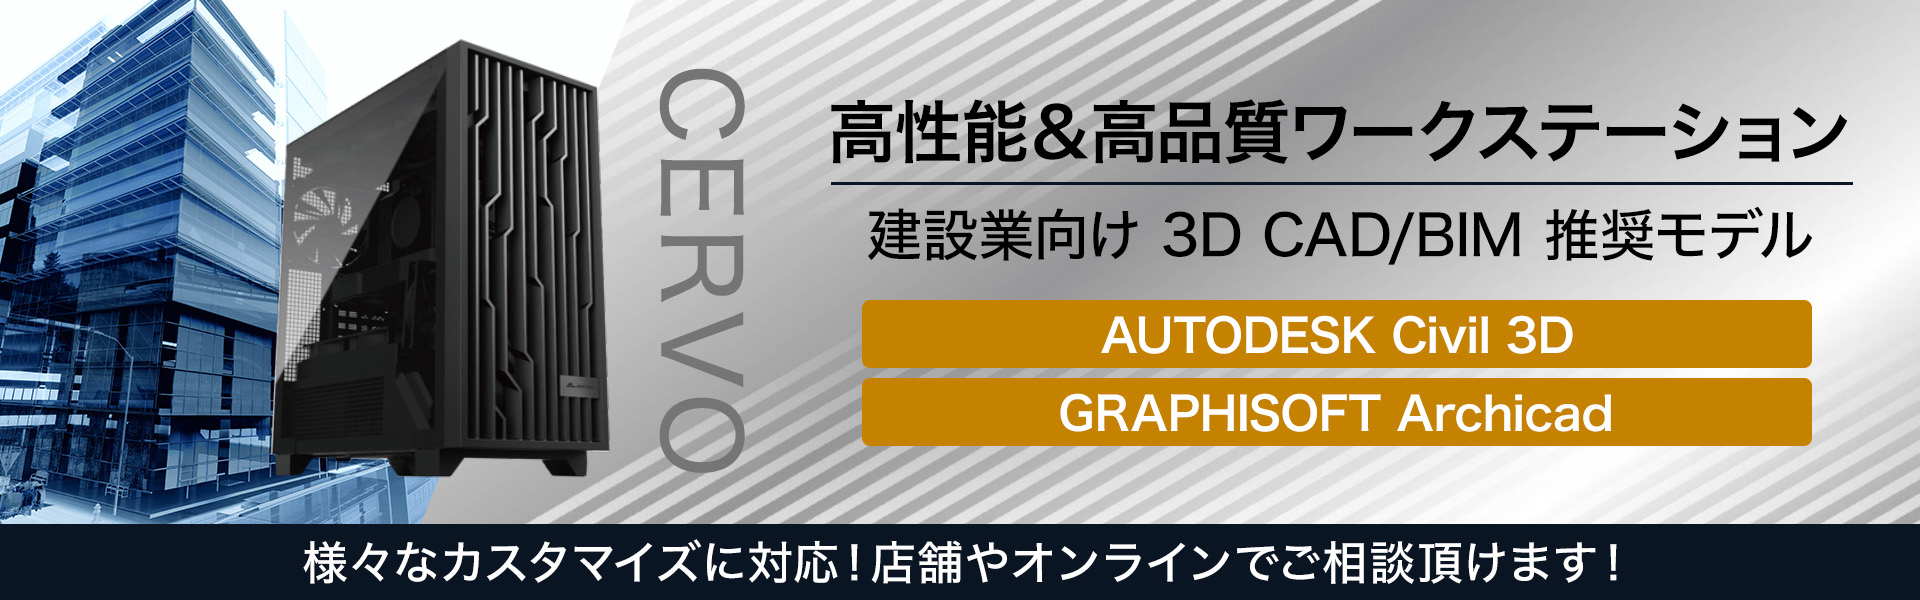 CERVO Type-APST14-Adobe